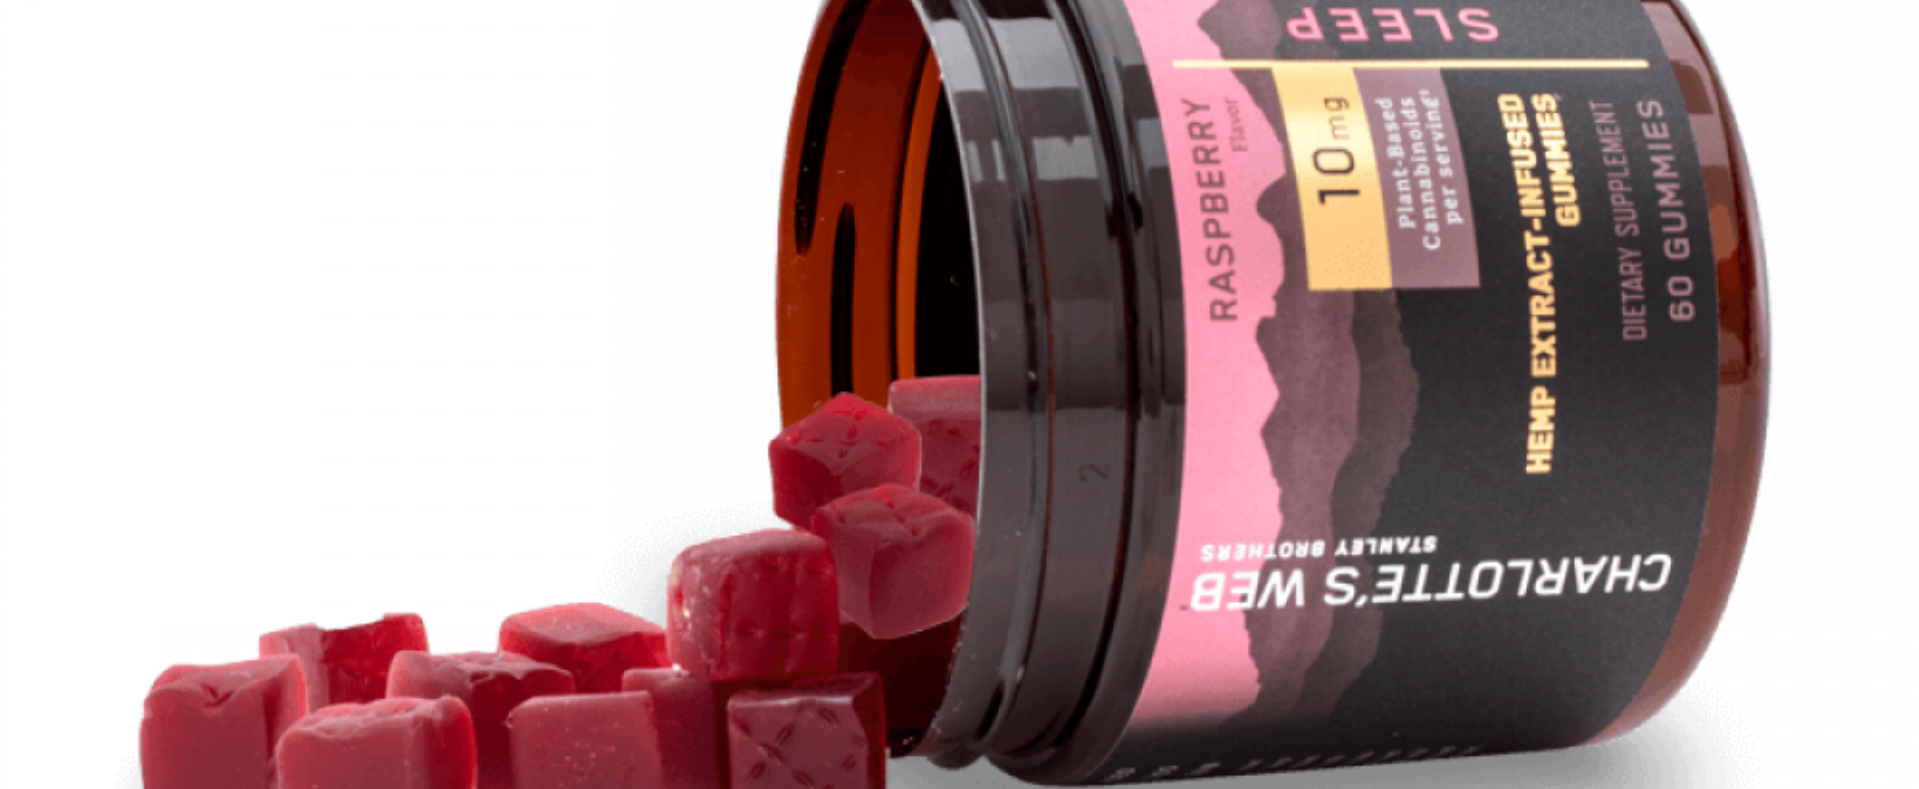 Hemp Extract-Infused Gummies Sleep Raspberry Flavor, Charlotte's Web